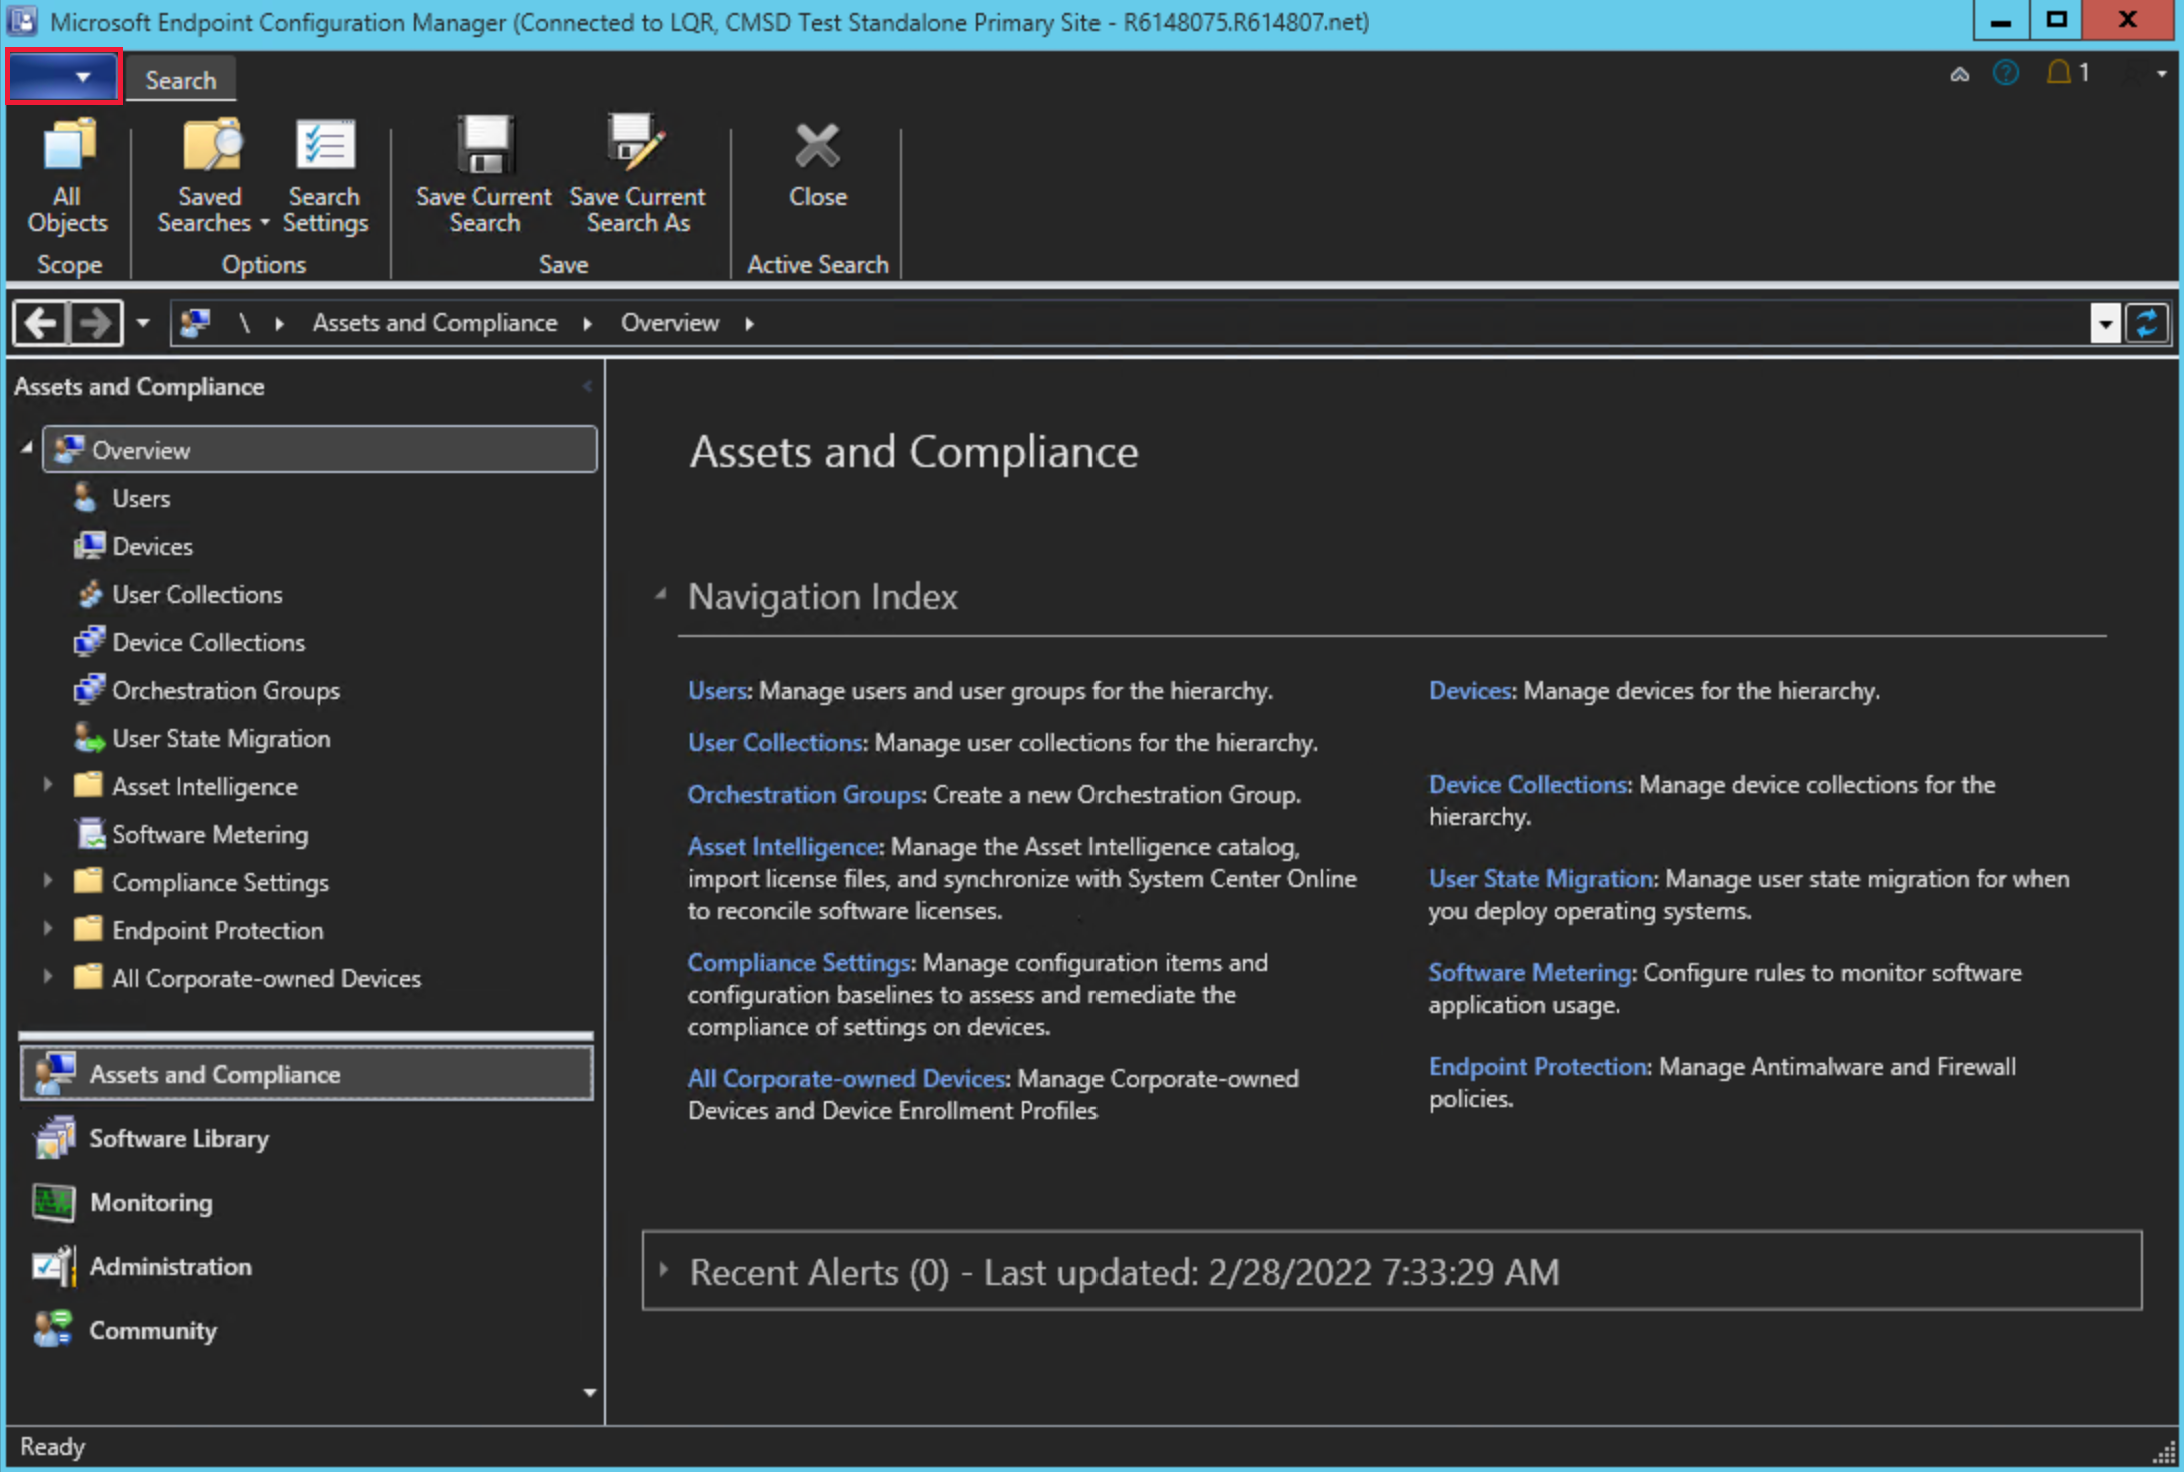 Captura de pantalla de la Configuration Manager con el tema oscuro de la consola. La opción 